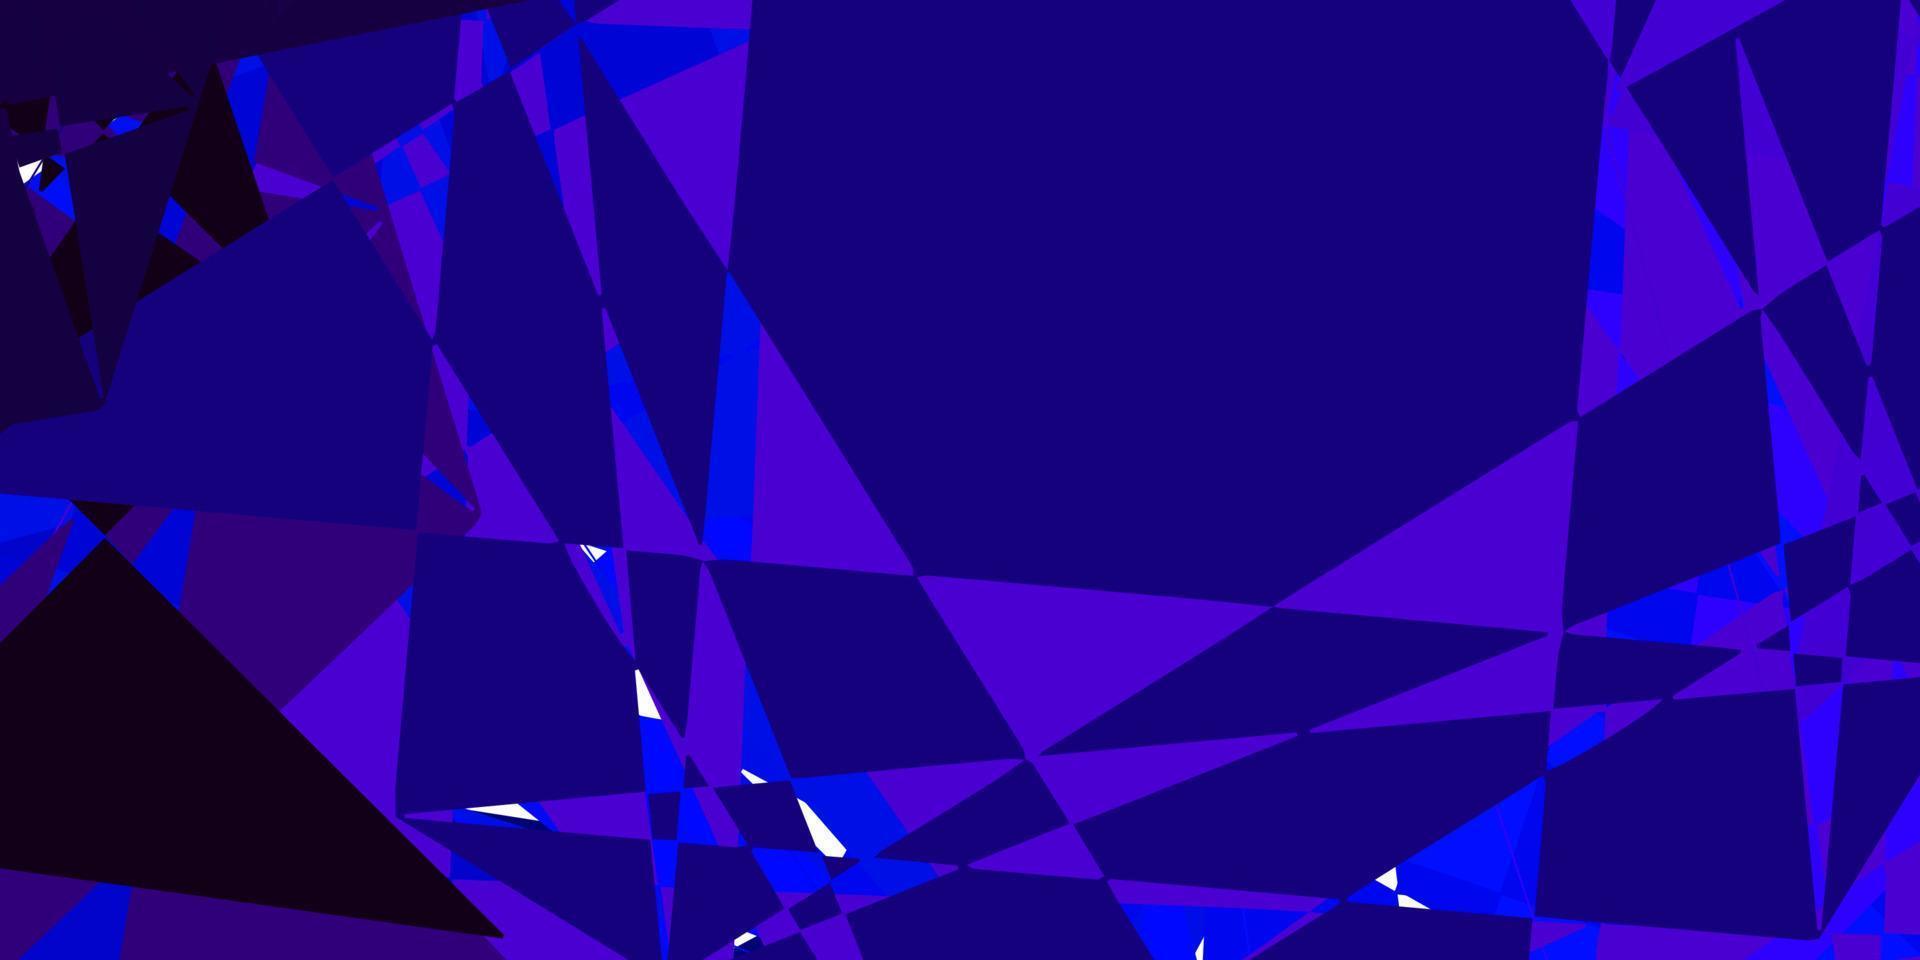 padrão de vetor rosa escuro, azul com formas poligonais.